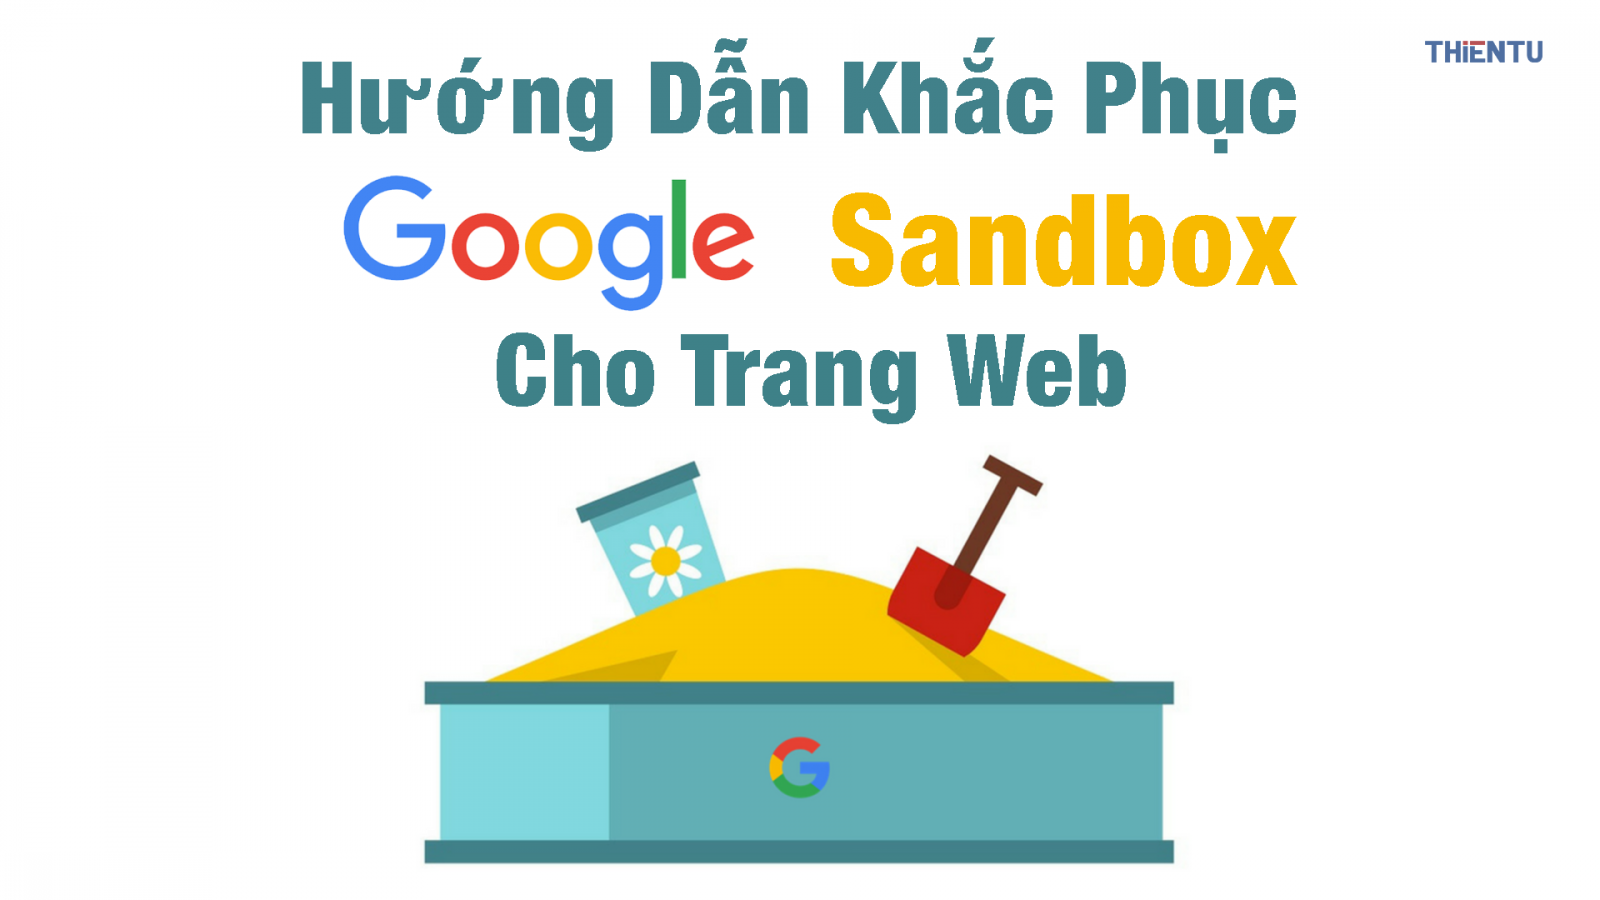 Sandbox là gì? Làm sao giúp website tránh bị Google Sandbox